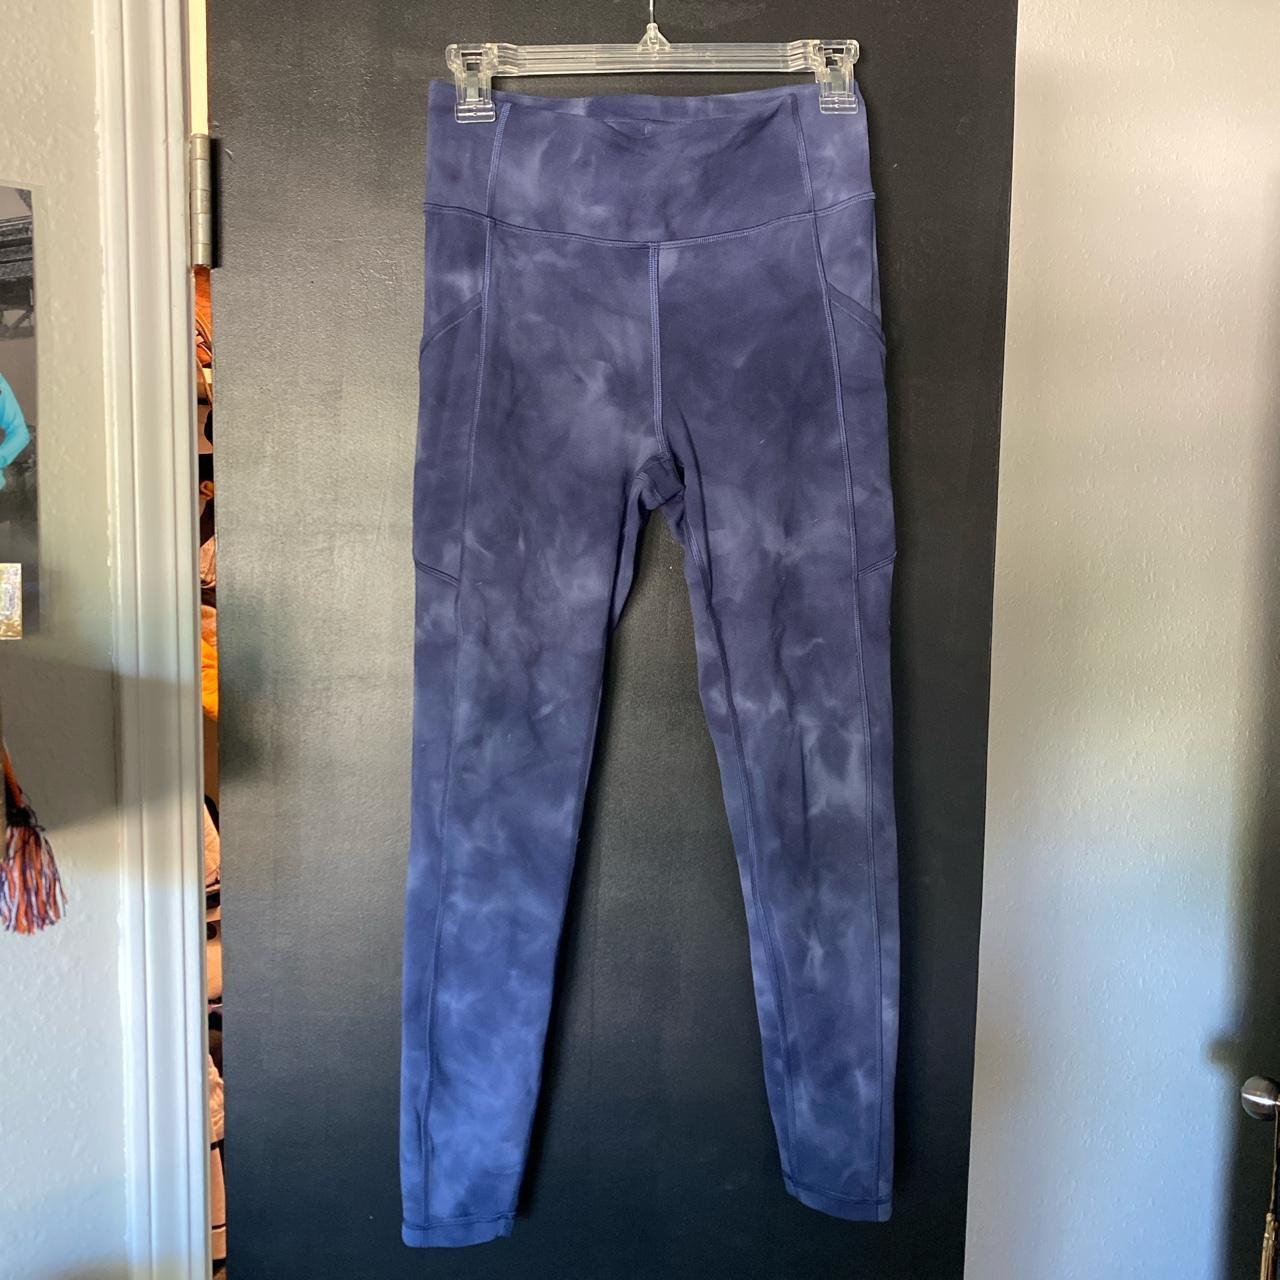 Blue marble Lululemon 3/4 length align leggings - Depop